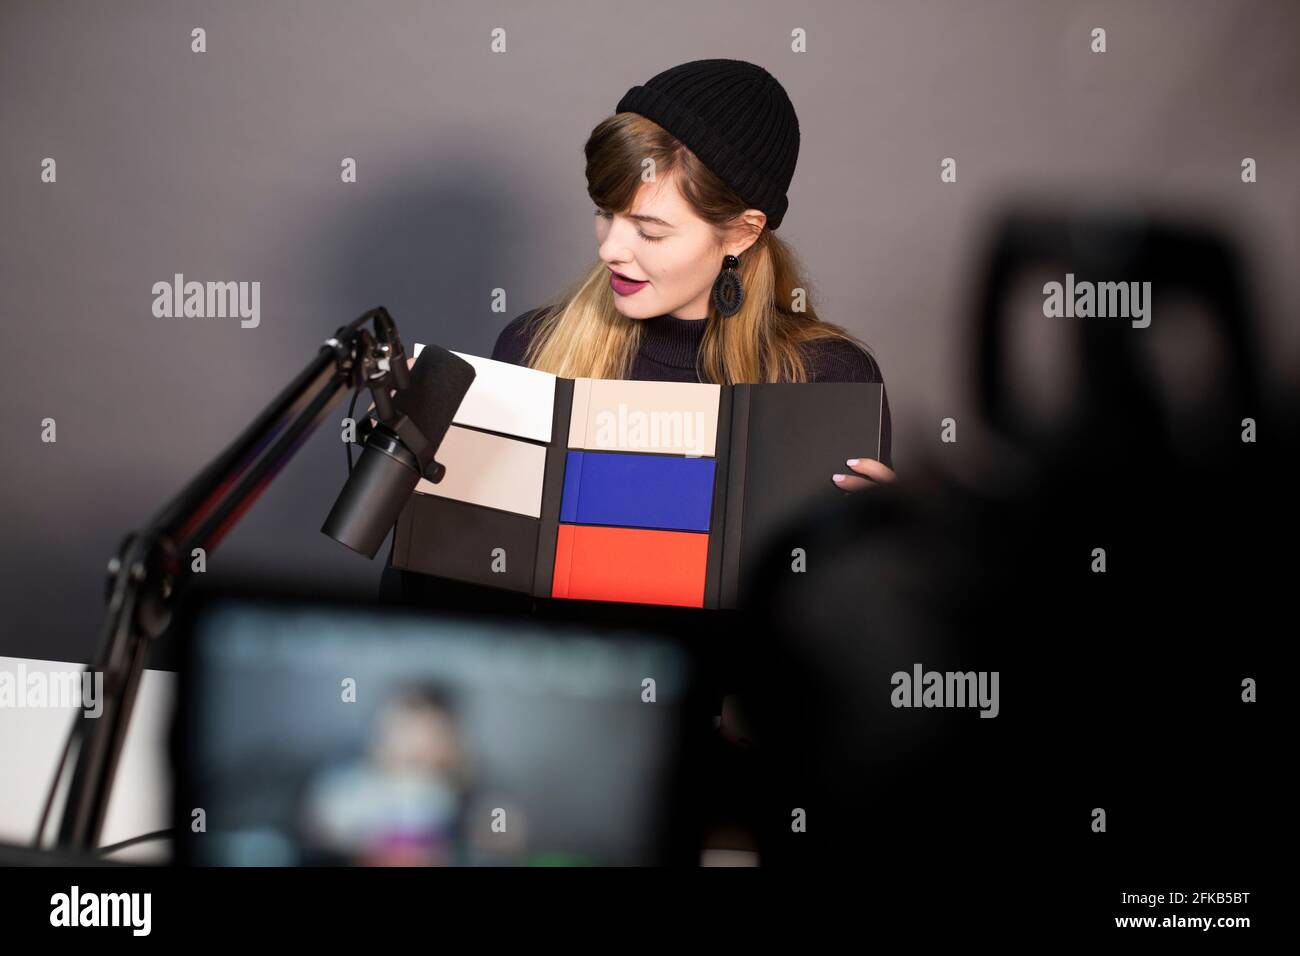 Geschäftsfrau, die sich das Produkt ansieht, während sie über eine Fernsehkamera aufzeichnet Stockfoto